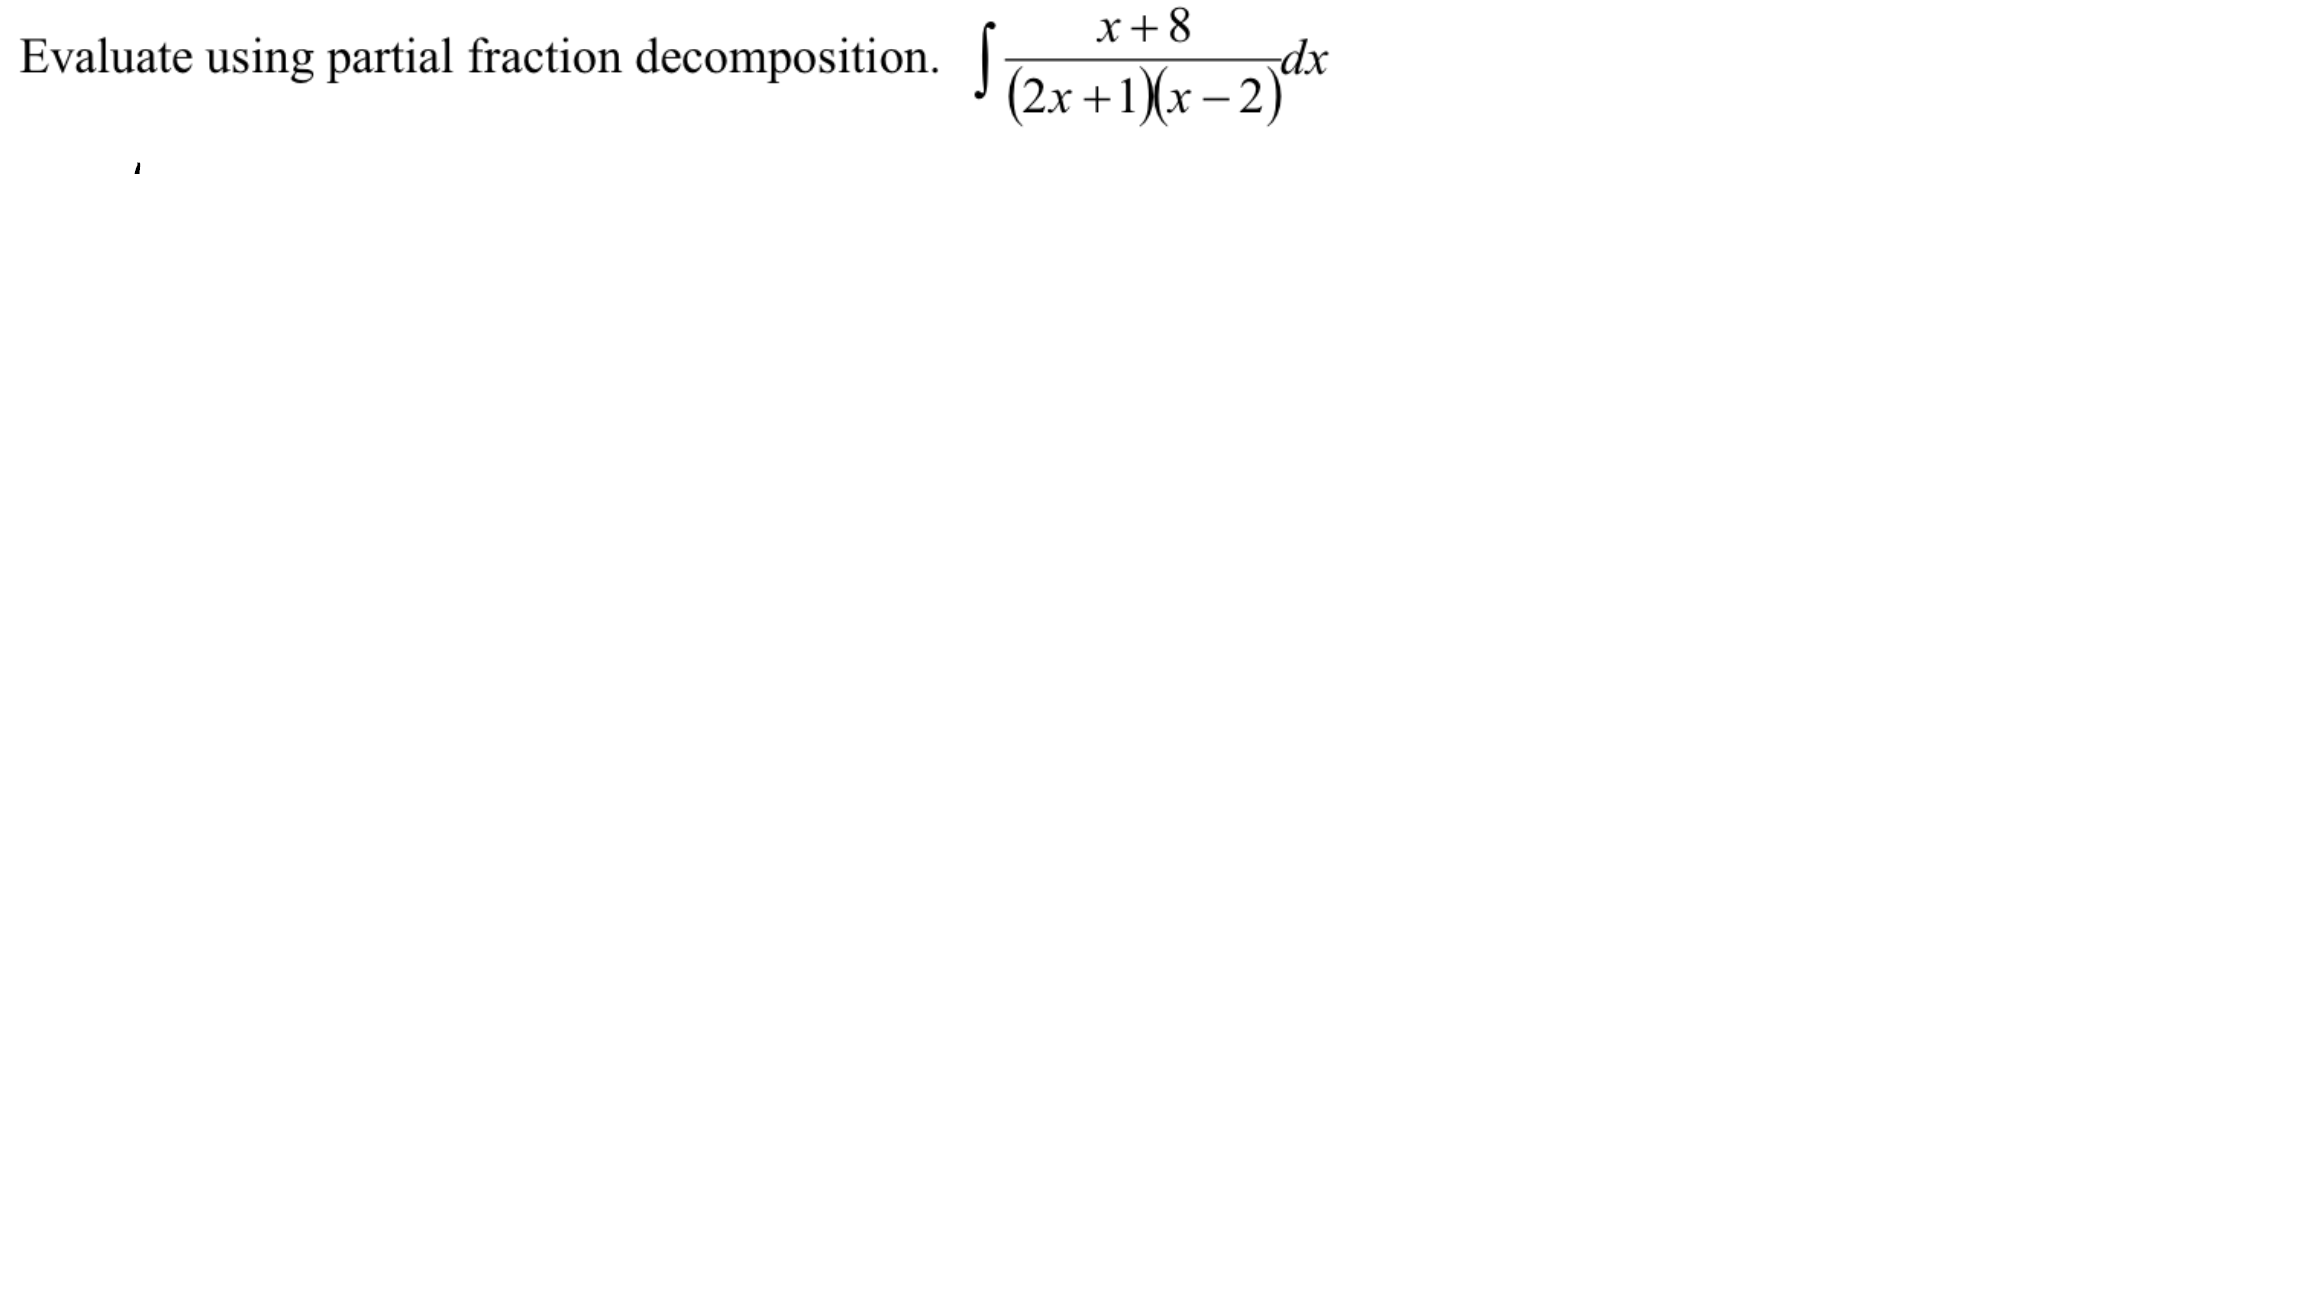 x+8
Evaluate using partial fraction decomposition.
dx
(2x +1)(x – 2)´
-
